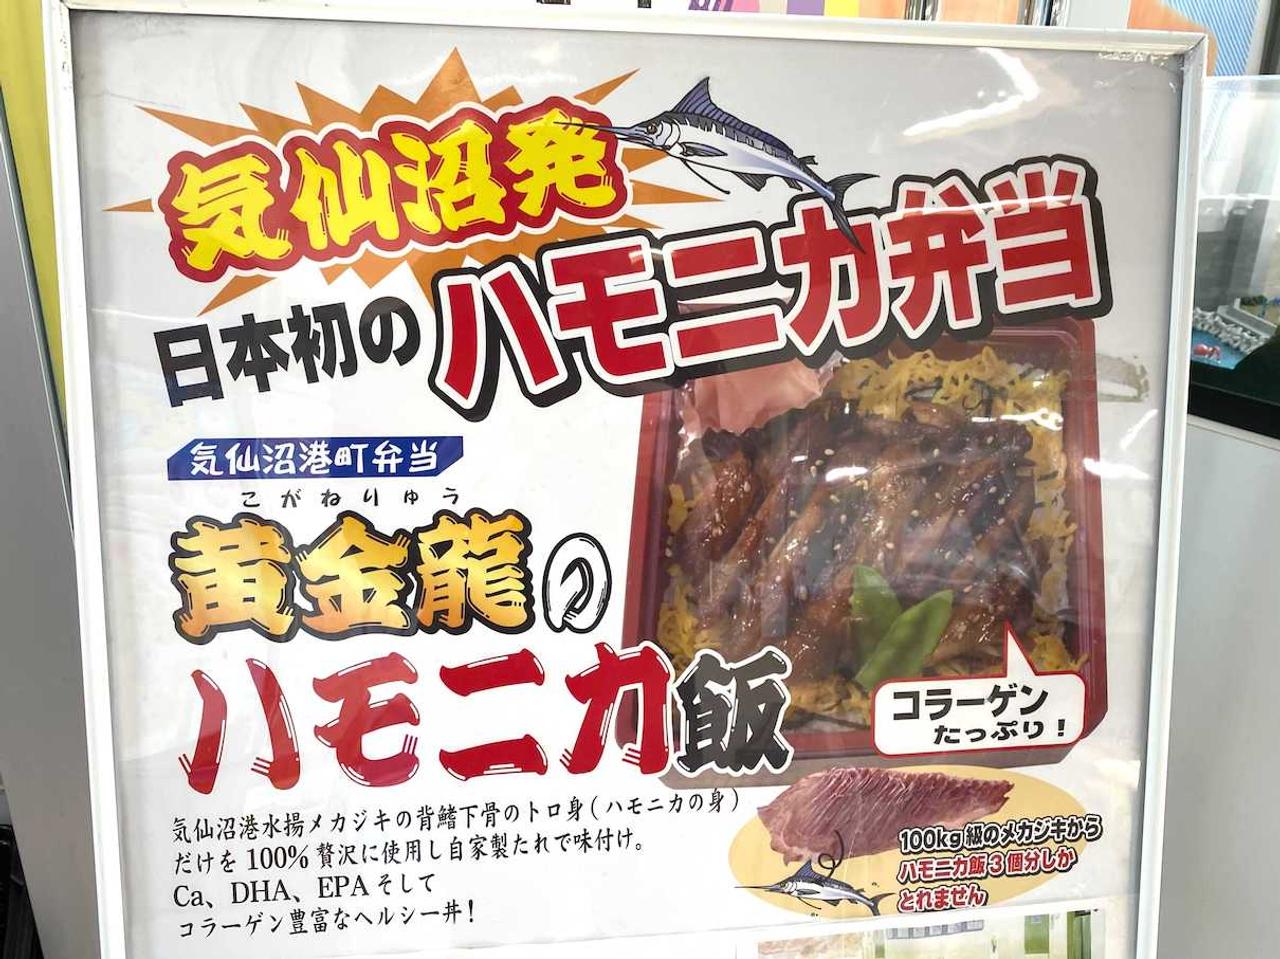 気仙沼駅の売店にある｢ハモニカ飯｣弁当のポスター。